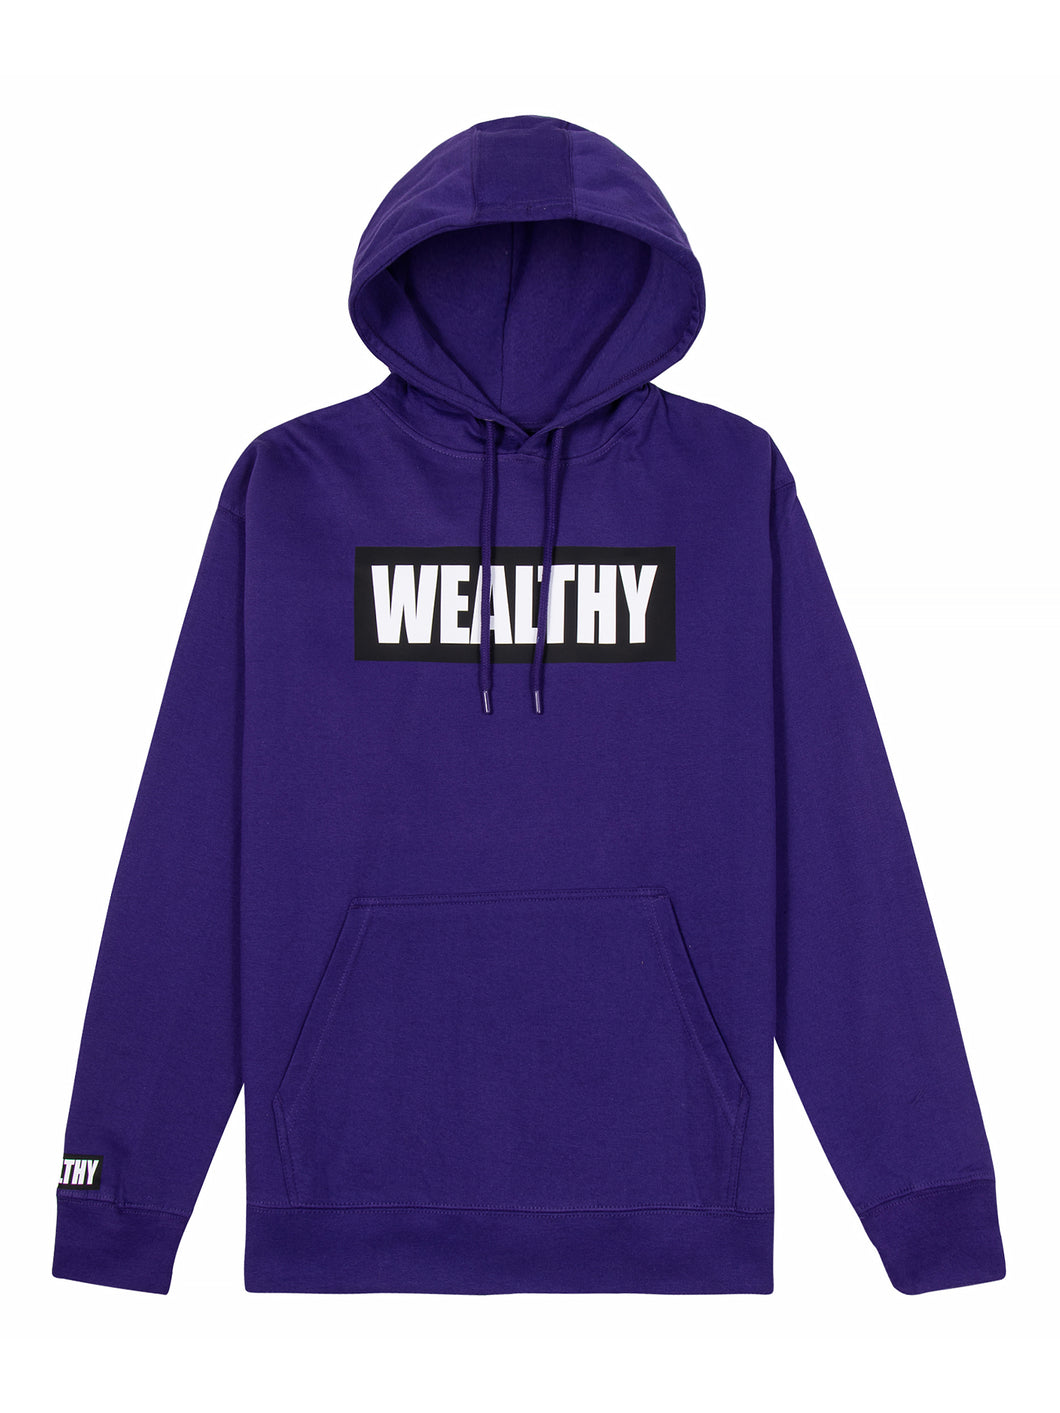 Wealthy Hoodie (Purple/Black/White)